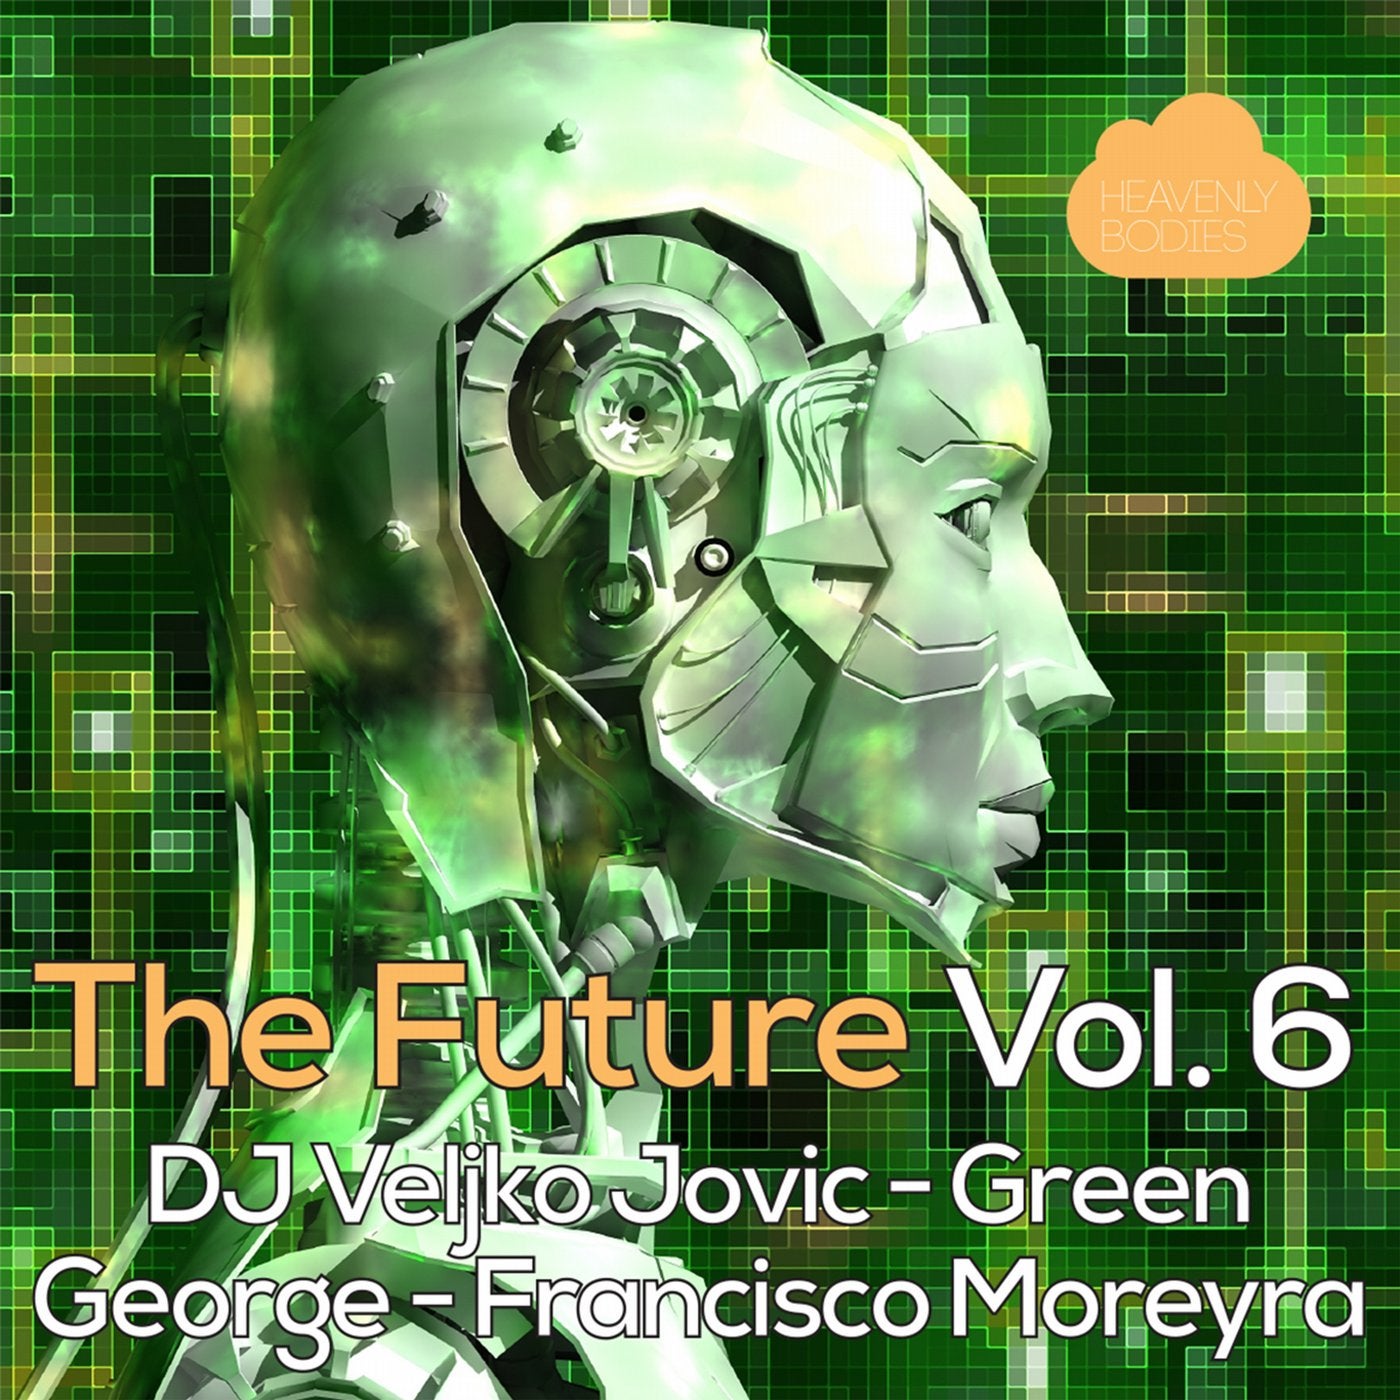 The Future, Vol. 6